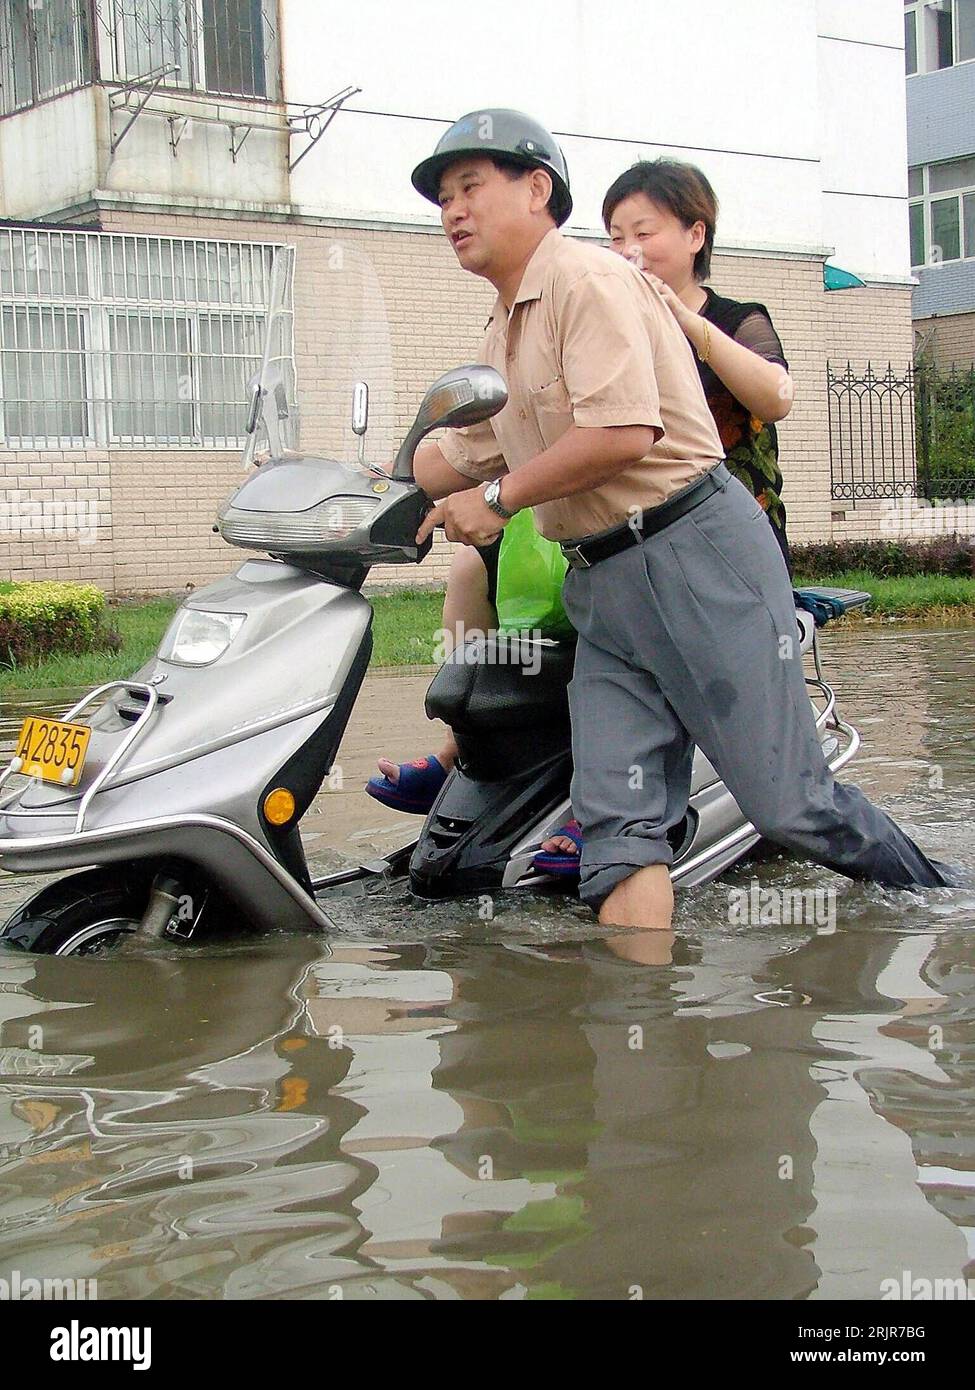 Bildnummer: 51320334  Datum: 05.07.2006  Copyright: imago/Xinhua Einheimisches Paar schiebt seinen Motorroller über eine nach schweren Regenfällen überfluteten Straße in Chaohu, China - PUBLICATIONxNOTxINxCHN, Personen , Objekte; 2006, Chaohu, Hochwasser, Überschwemmung, Überschwemmungen, Katastrophe, Katastrophen, Naturkatastrophen , Flut, Fluten, Flutkatastrophe, Flutkatastrophen, überschwemmt, überschwemmte, überflutet, überflutete, Moped, Mopeds, Roller, Frau, Frauen, Mann, Männer, Paare, Einheimischer, Einheimische; , hoch, Kbdig, Gruppenbild, Seitenansicht, Perspektive, China,  , Straße, Stock Photo